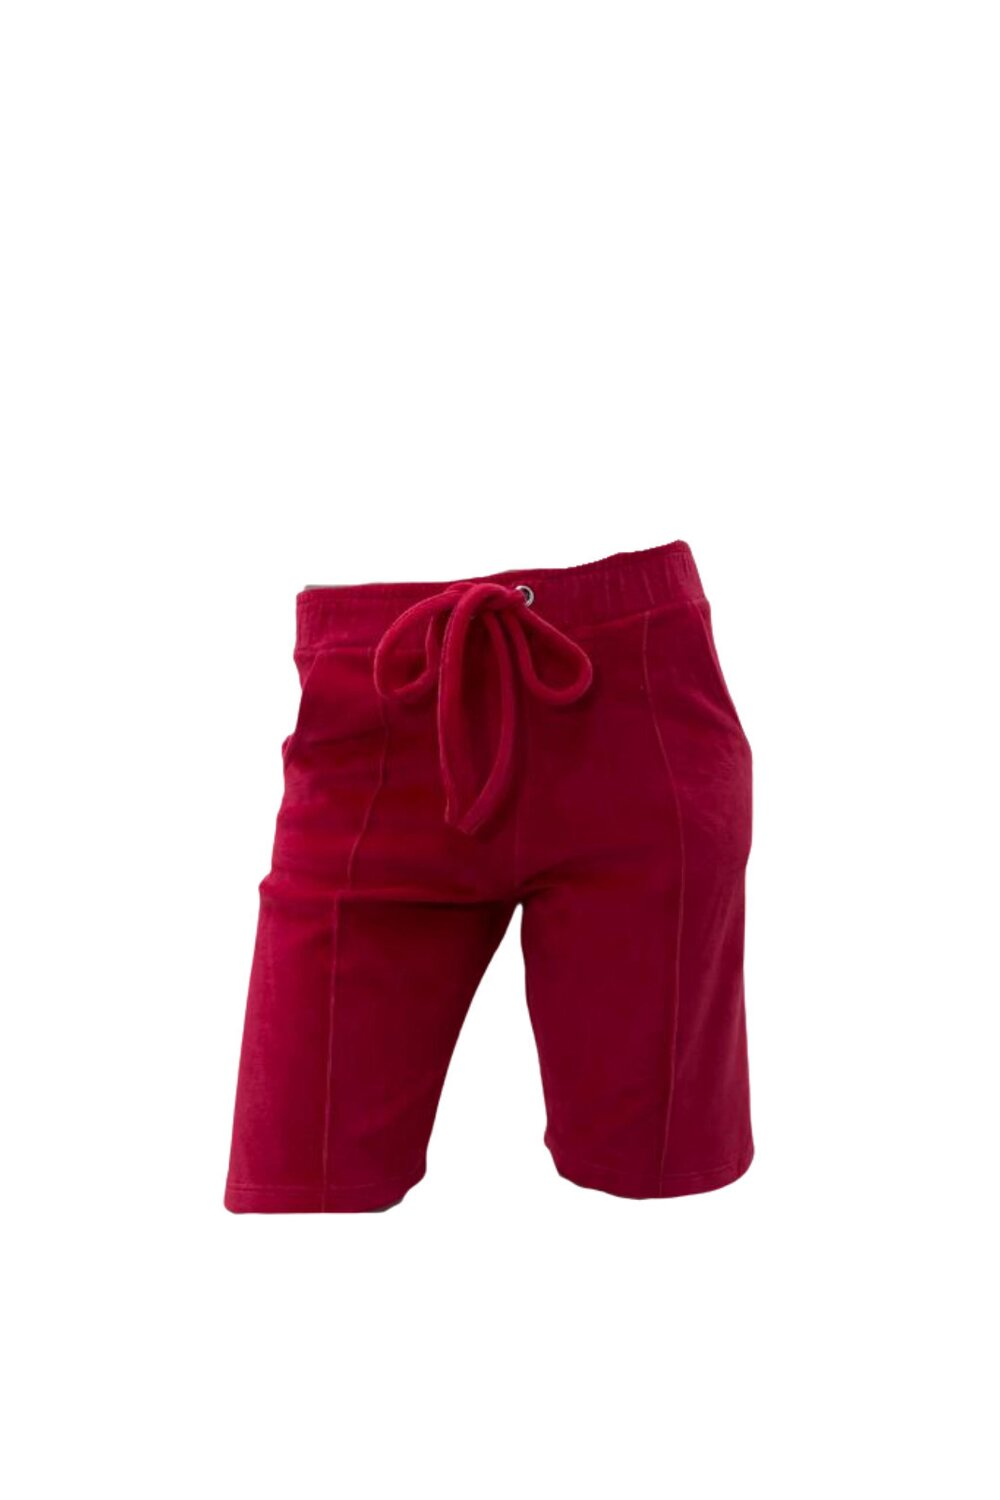 Pantaloni Scurti de Dama, din Catifea, Rosu image3